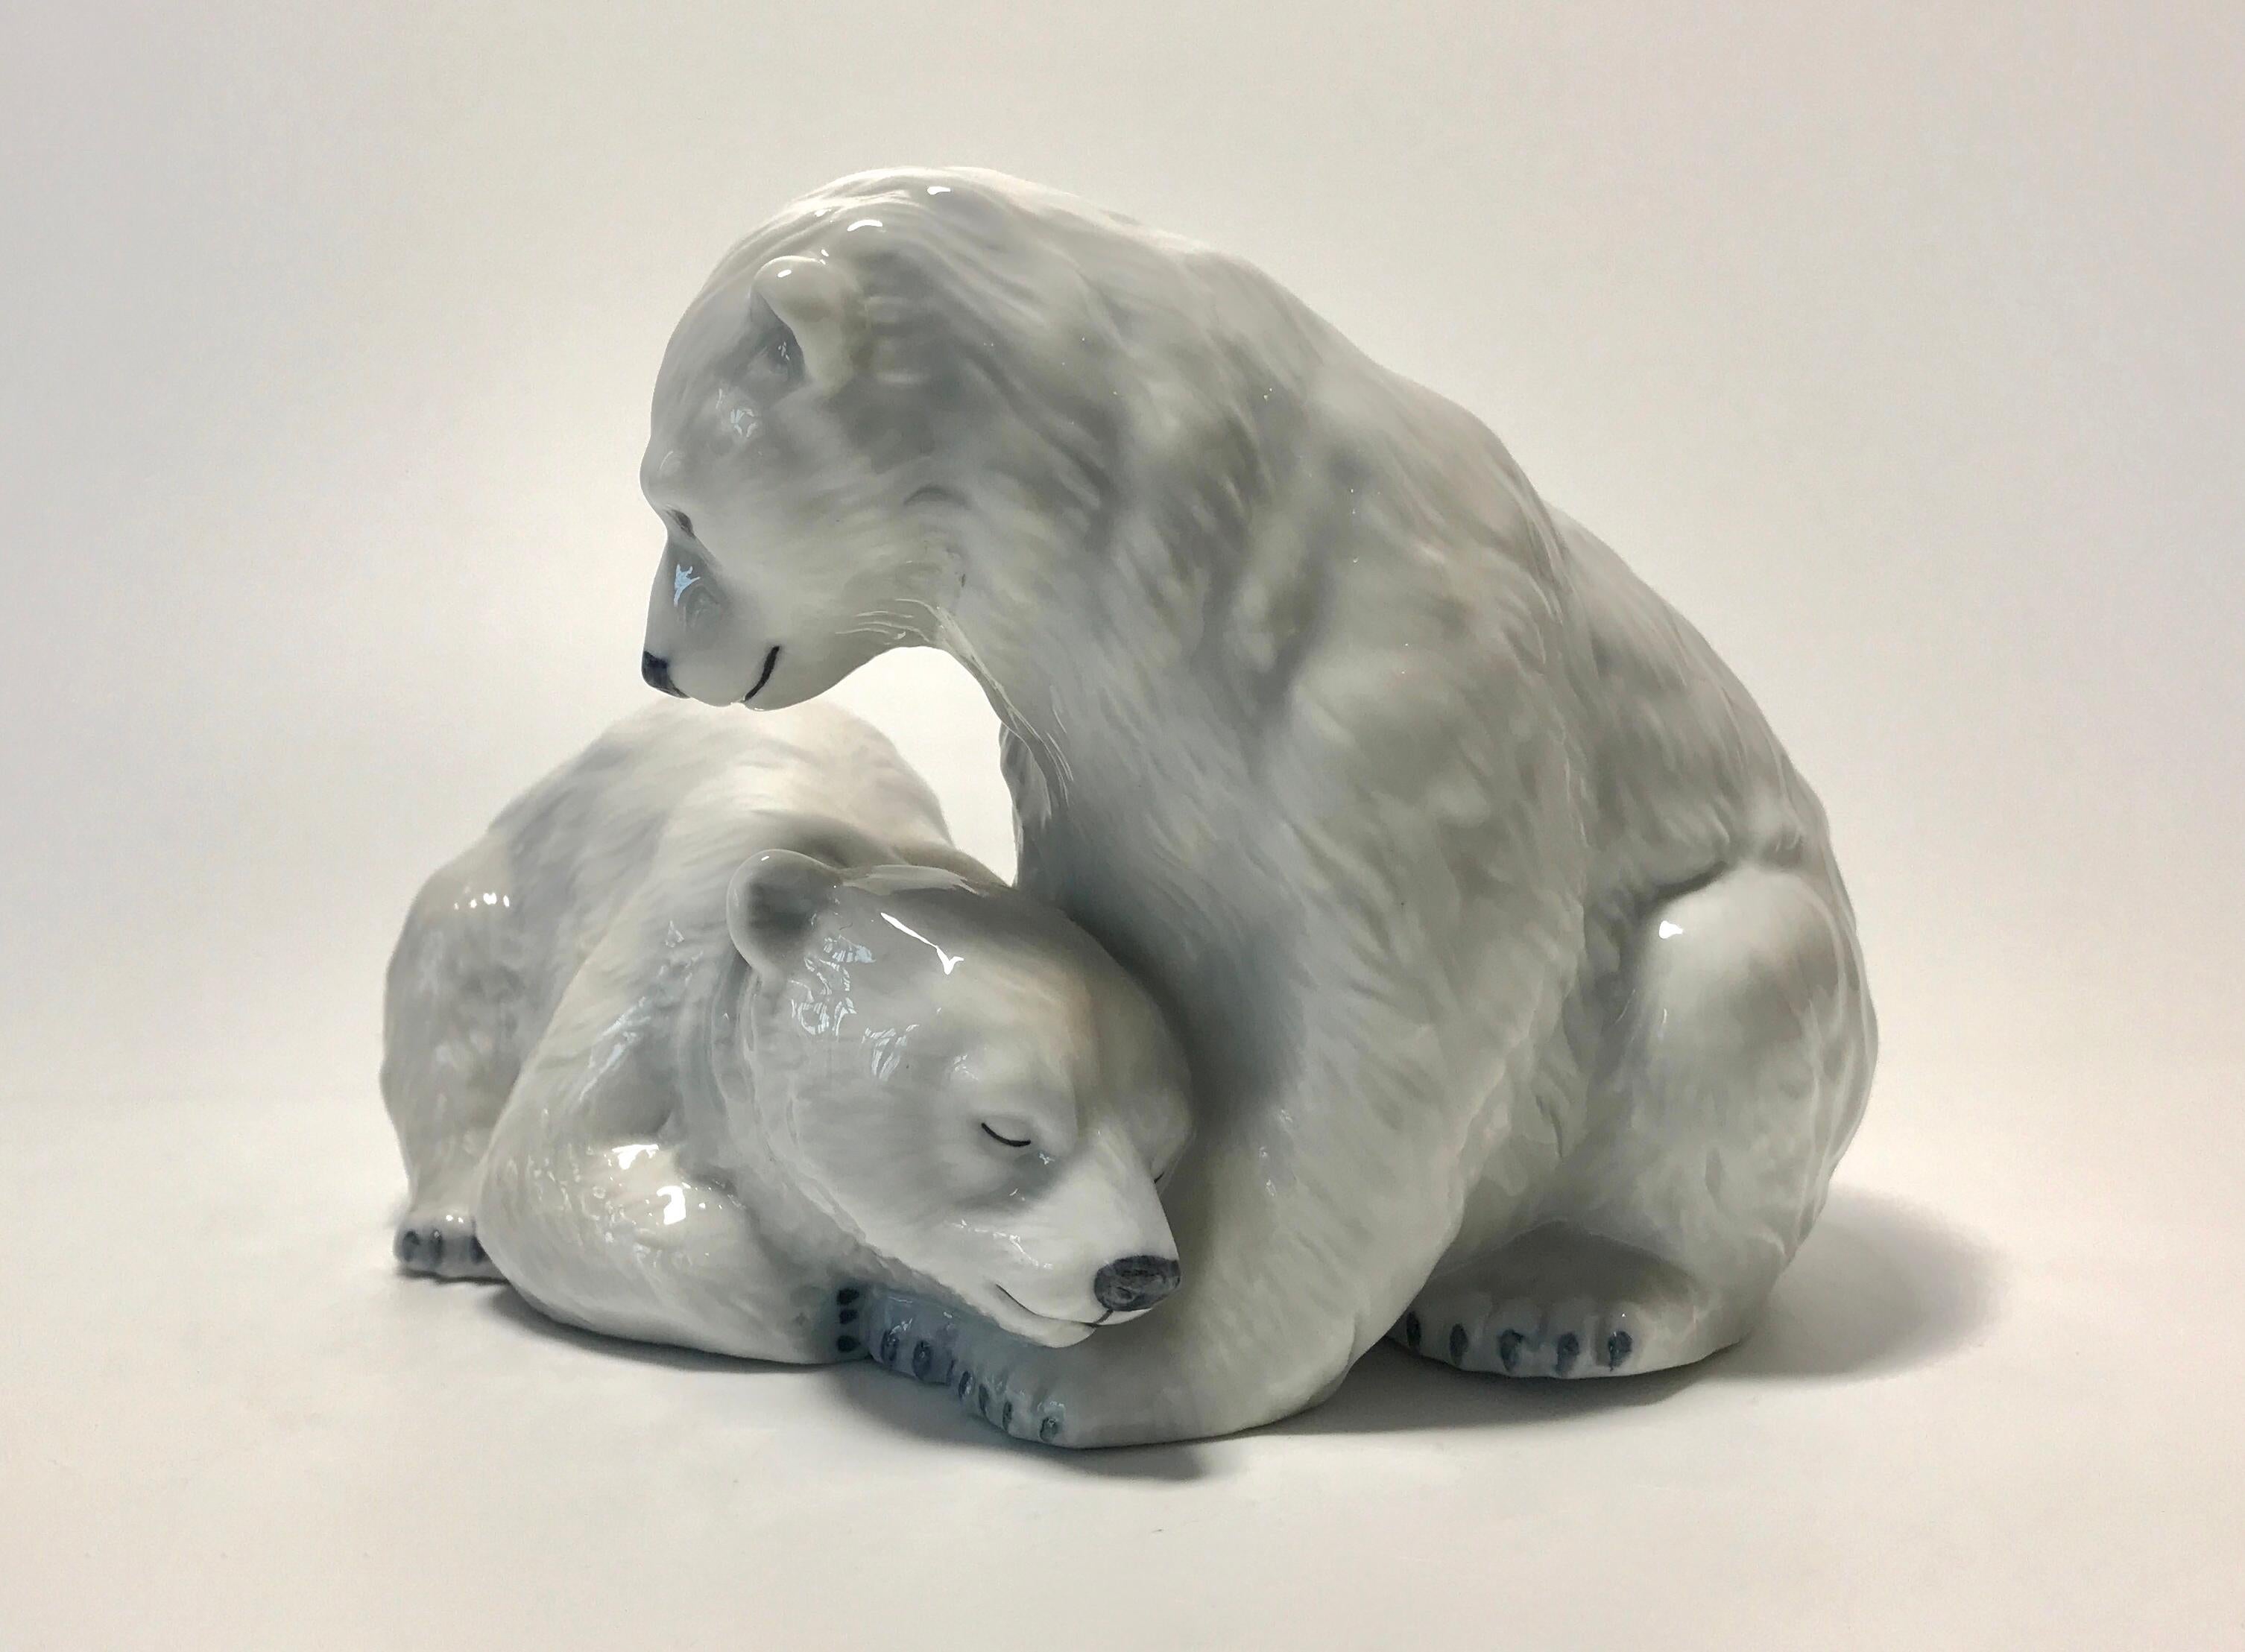 Allan Therkelsen für Royal Copenhagen Porzellan Zwillings-Eisbärenjungen Figur #356
Wunderschön geformt und handbemalt mit der Unterglasurtechnik, einer Methode, bei der das Stück bemalt wird, bevor es mit einer transparenten Glasur überzogen und